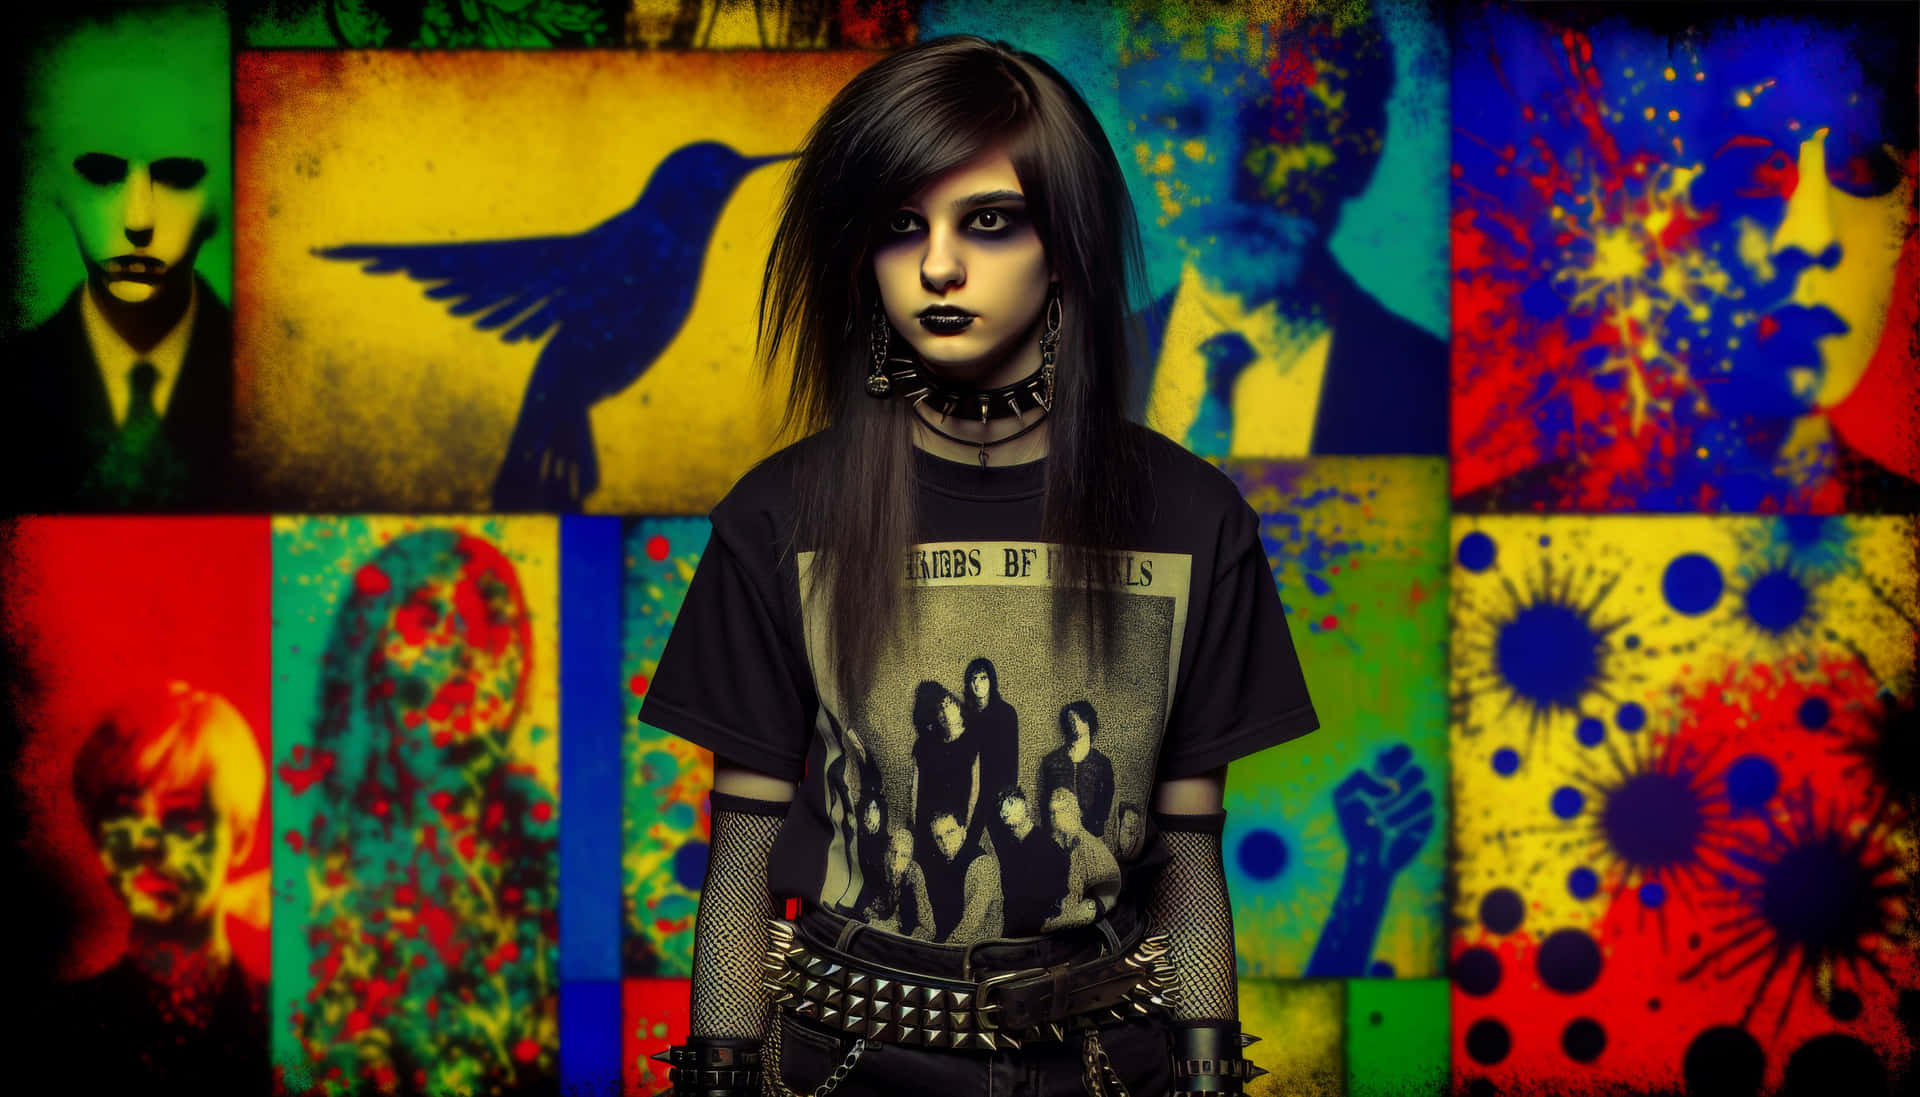 Emo Girl Against Colorful Street Art Backdrop.jpg Wallpaper